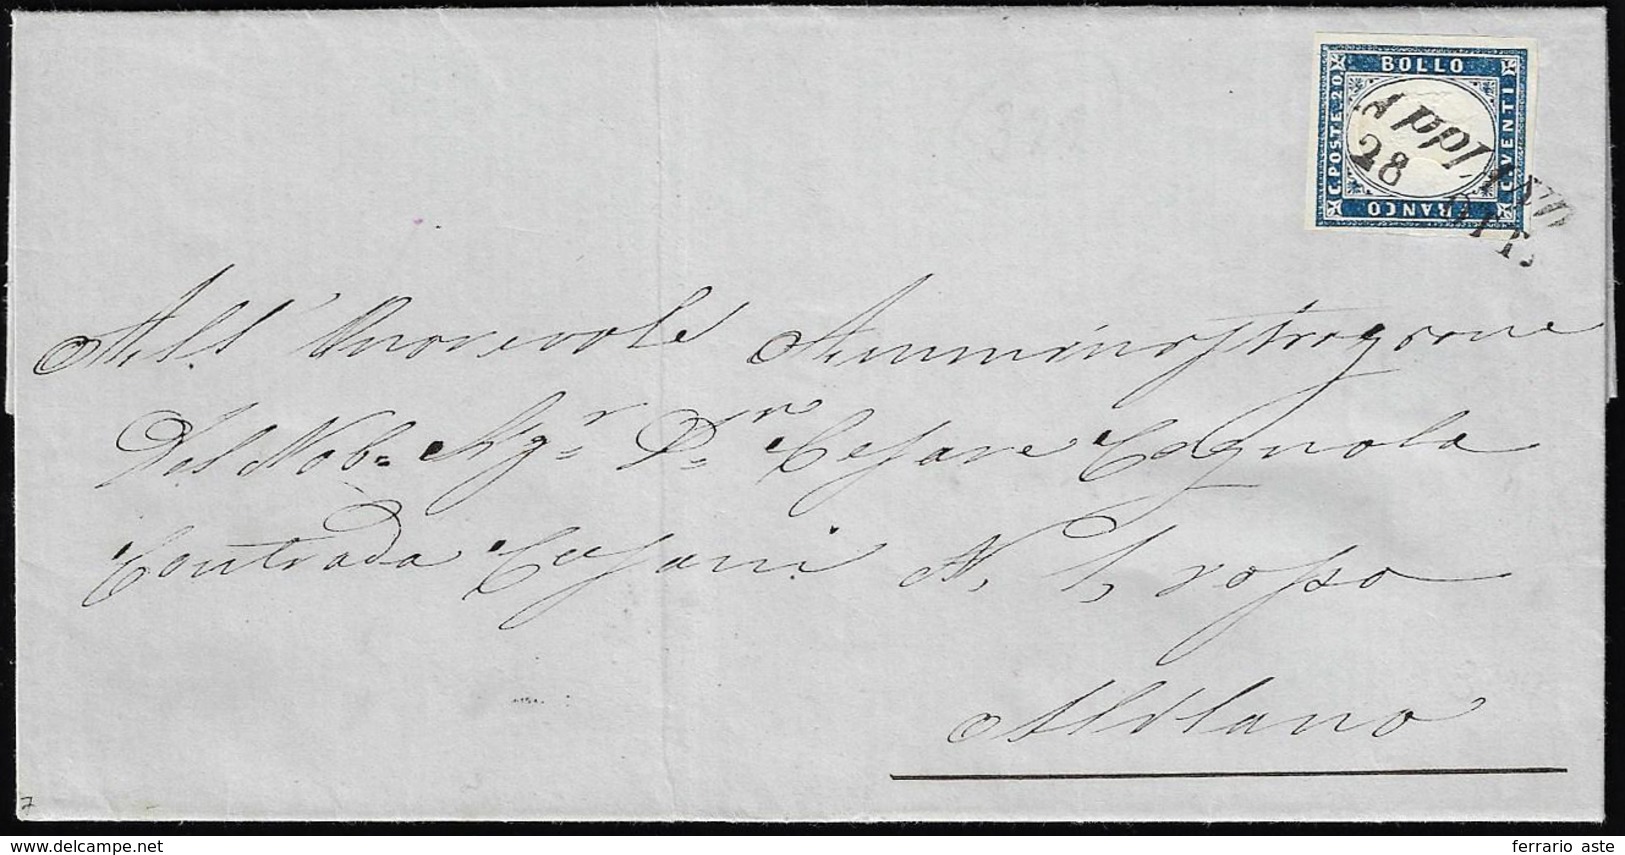 APPIANO, SI Punti 7 - 20 Cent. (Sardegna 15Ca), Perfetto, Su Lettera Del 28/10/1861 Per Milano.... - Lombardo-Venetien